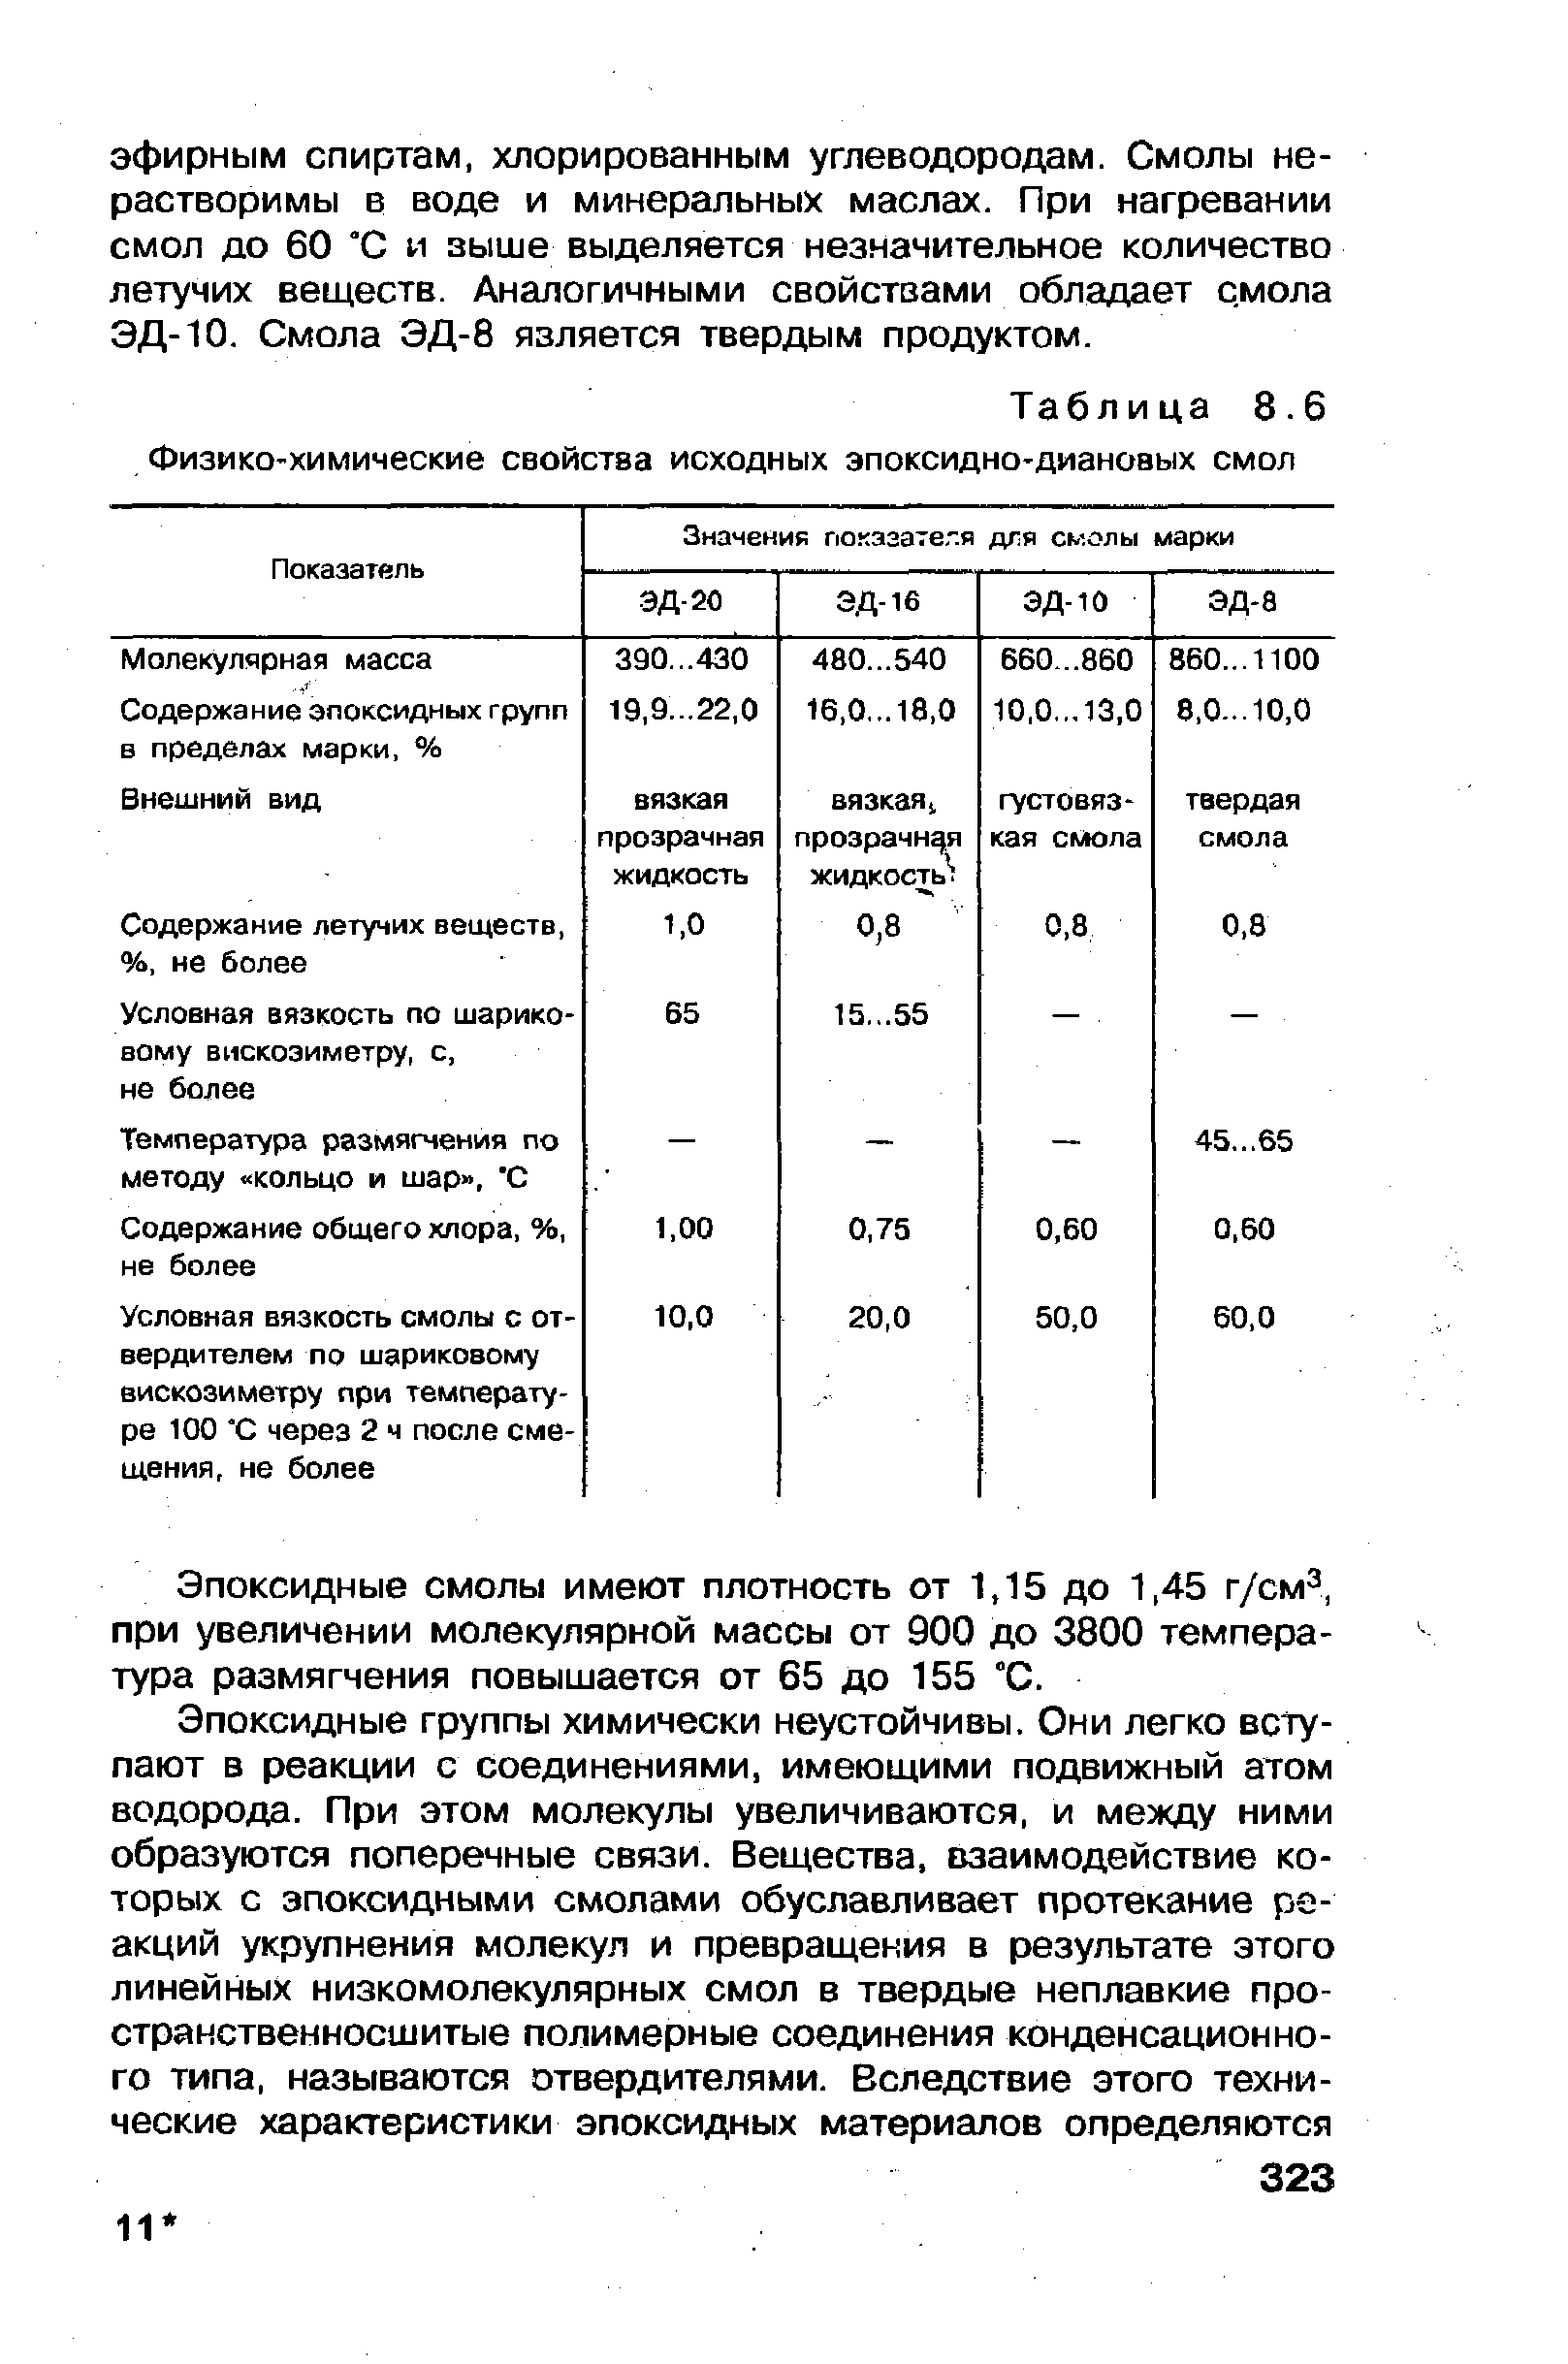 Таблица 8.6 <a href="/info/187379">Физико-химические свойства</a> исходных эпоксидно-диановых смол
